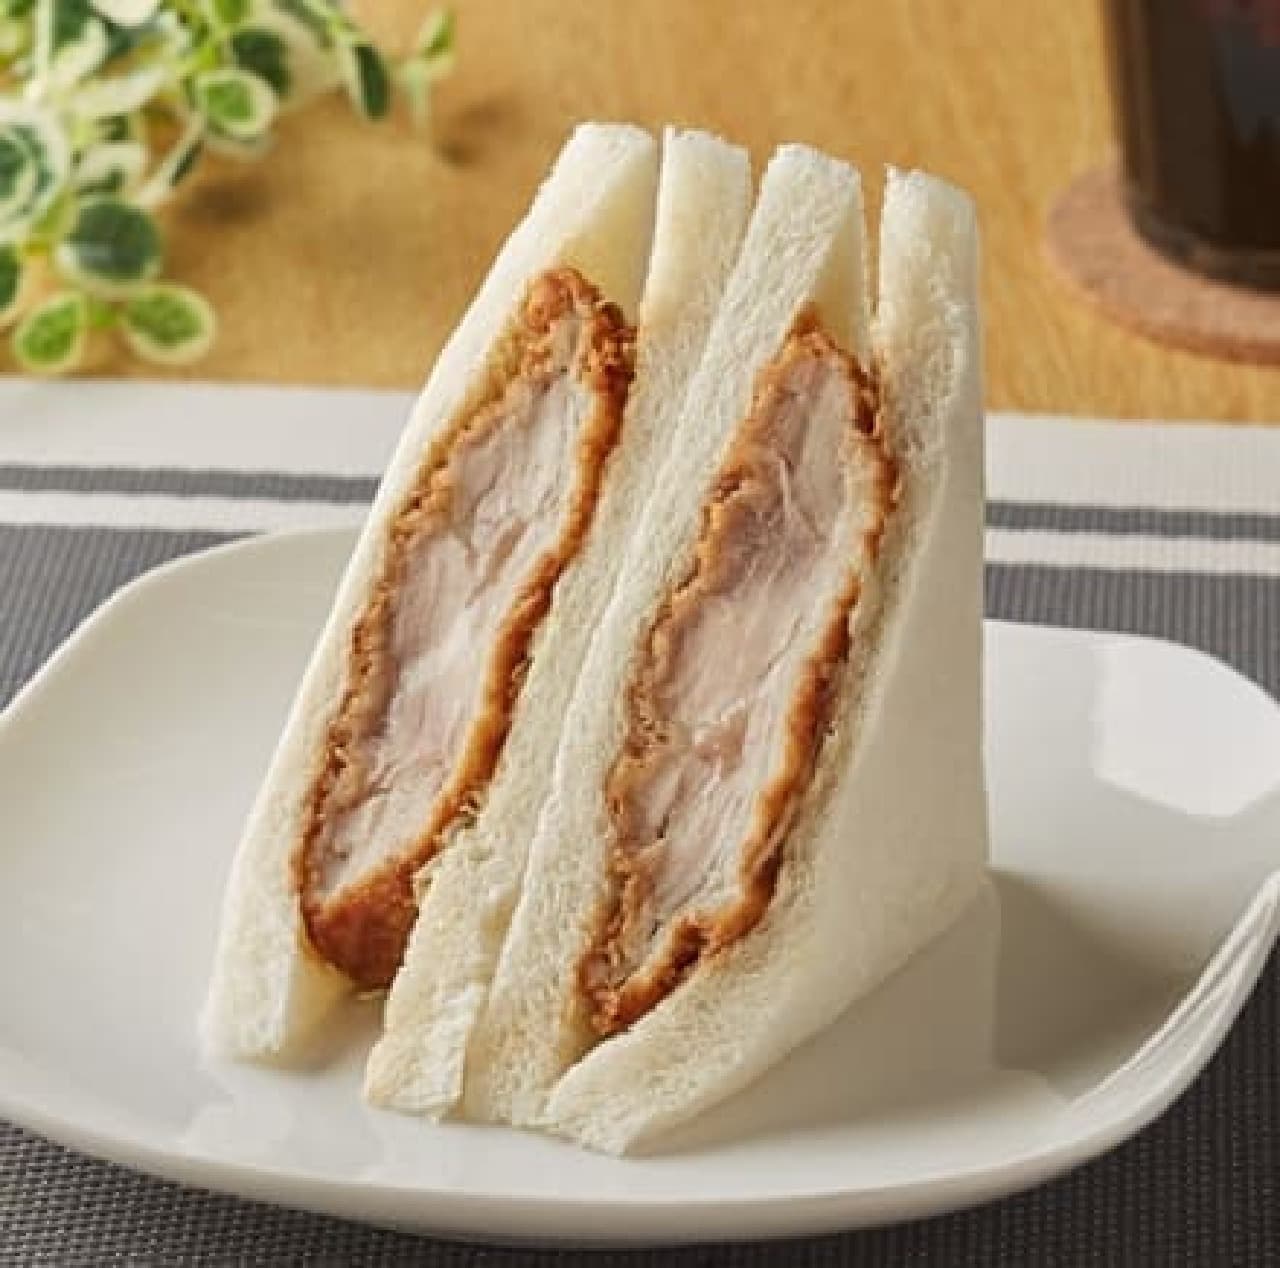 FamilyMart "Chicken Katsu Sandwich"